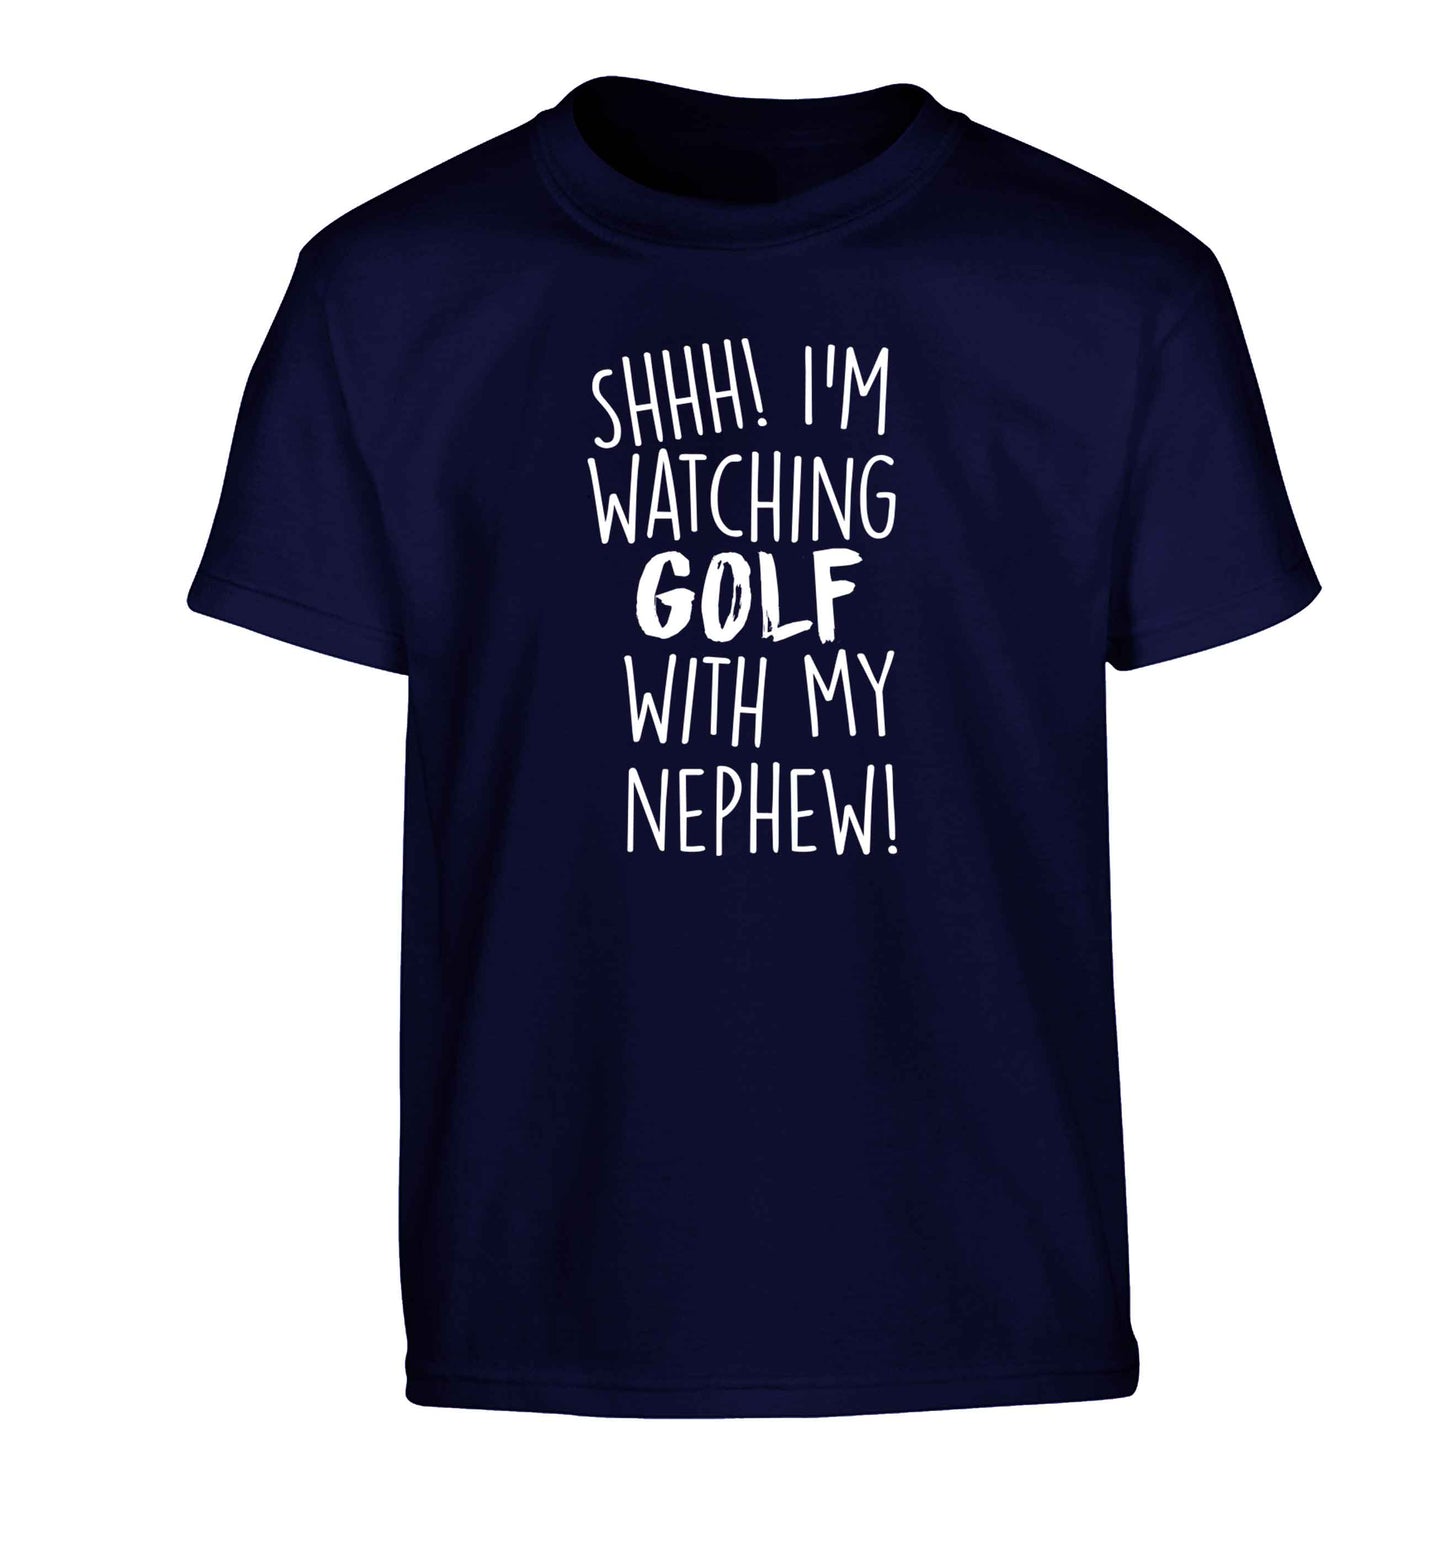 Shh I'm watching golf with my nephew Children's navy Tshirt 12-13 Years